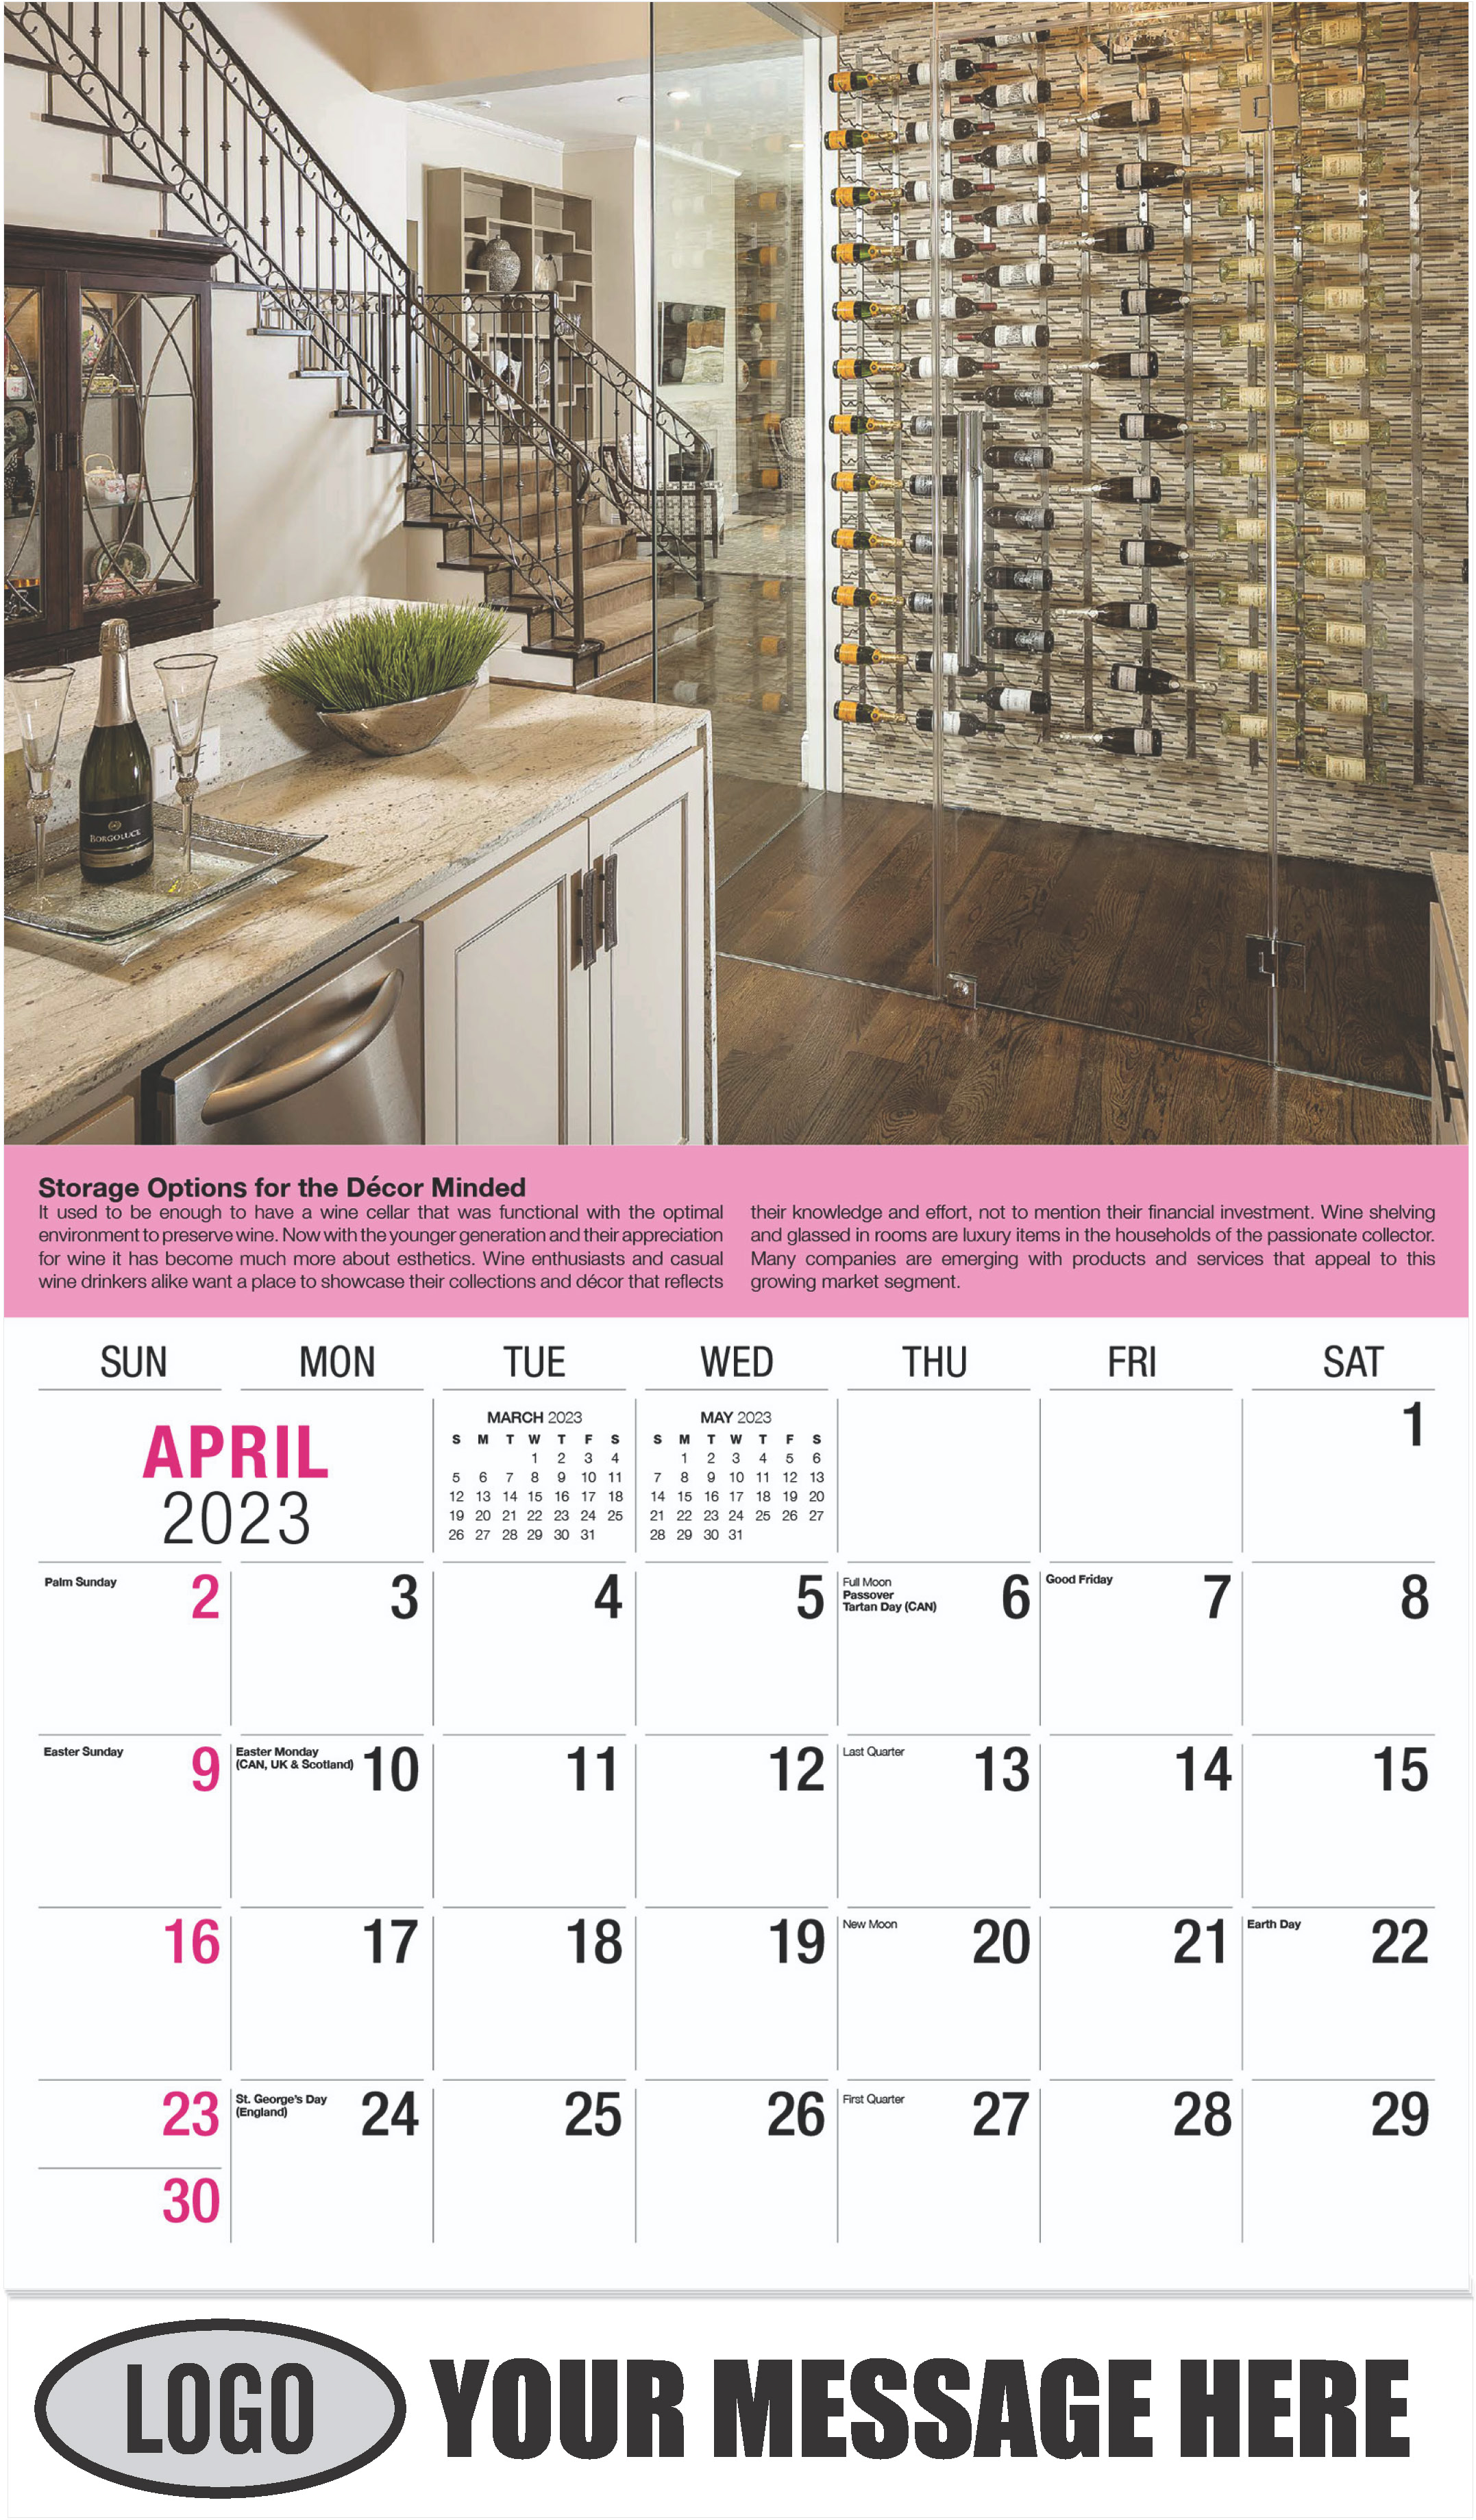 Wine Tips Calendar - April - Vintages 2023 Promotional Calendar